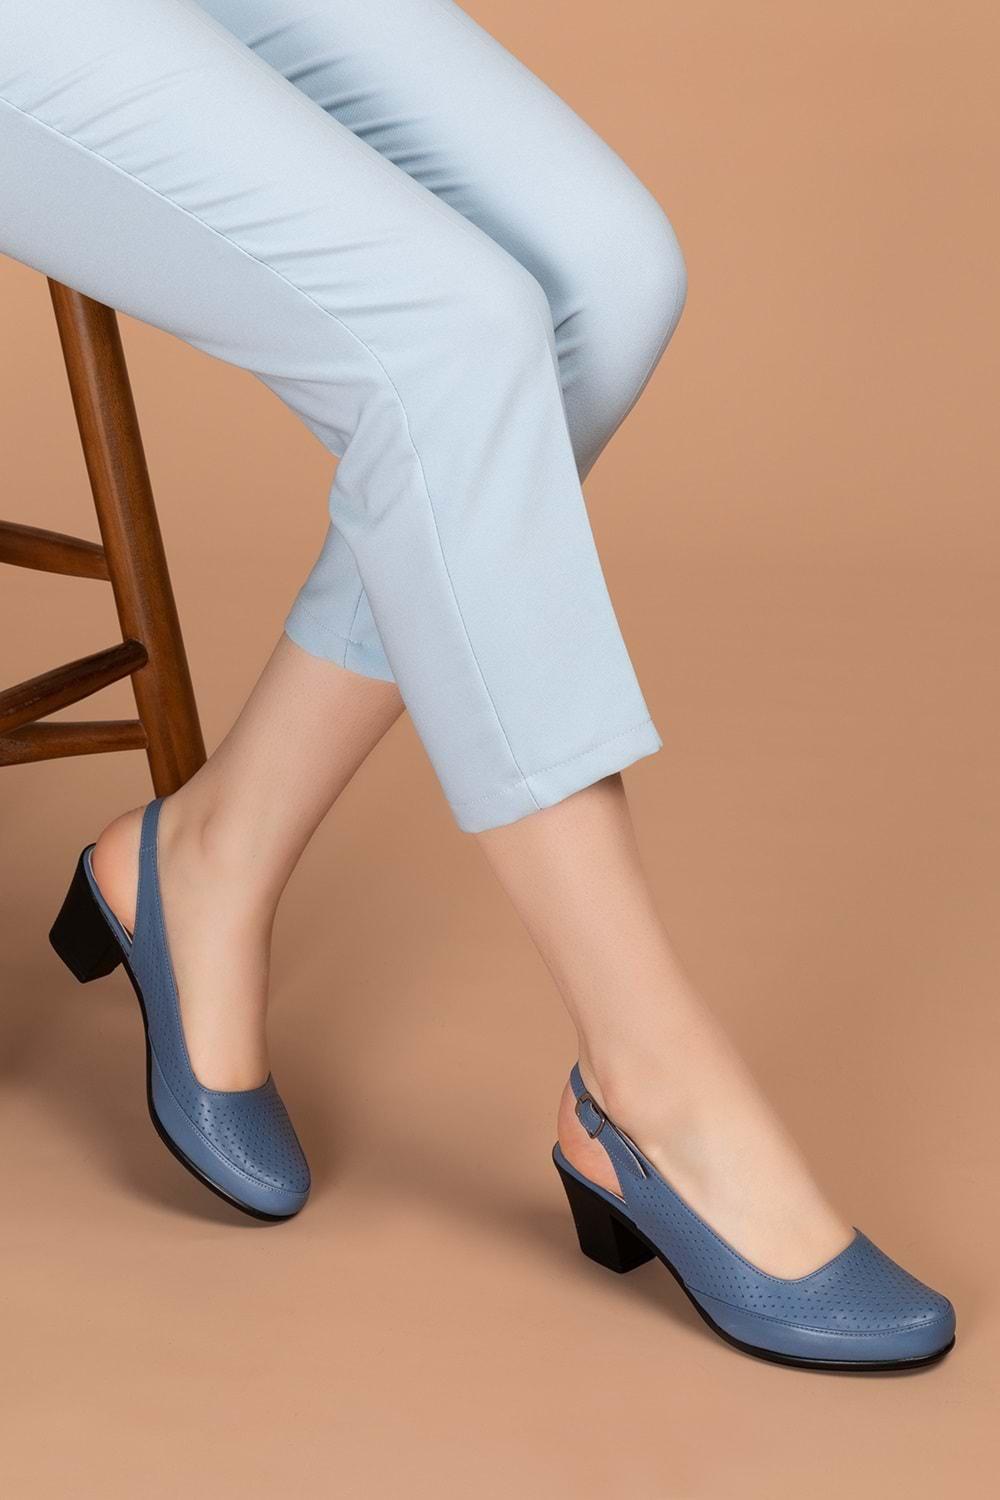 Gondol Kadın Hakiki Deri Klasik Topuklu Ayakkabı vdt.272 - Mavi - 36